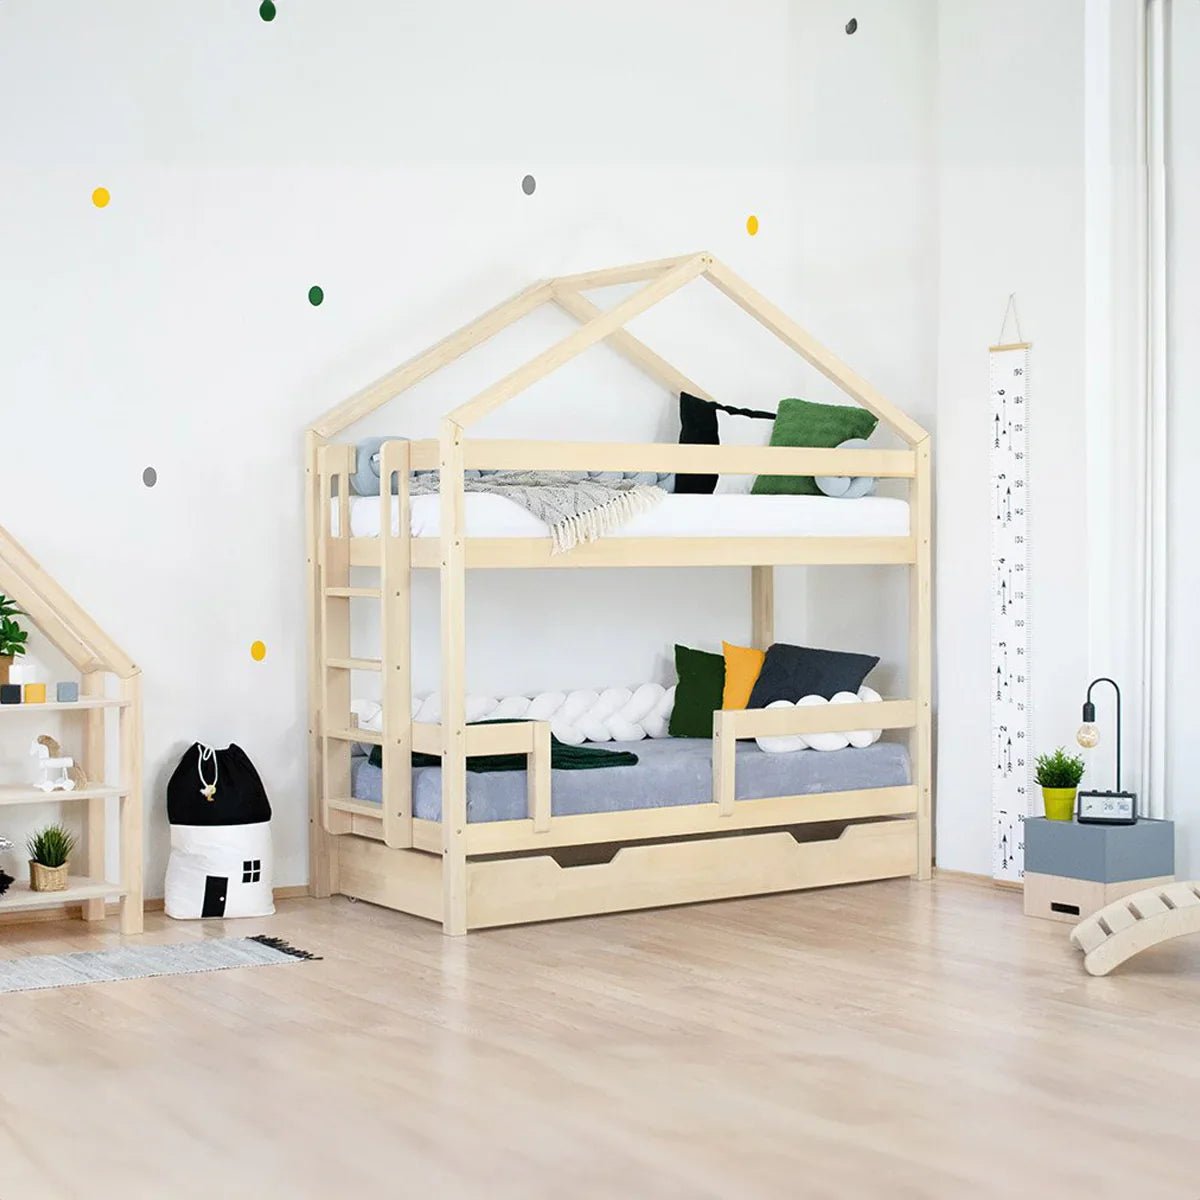 Wooden Children's House Bunk Bed KILI - Natural - MOBILIA VITA